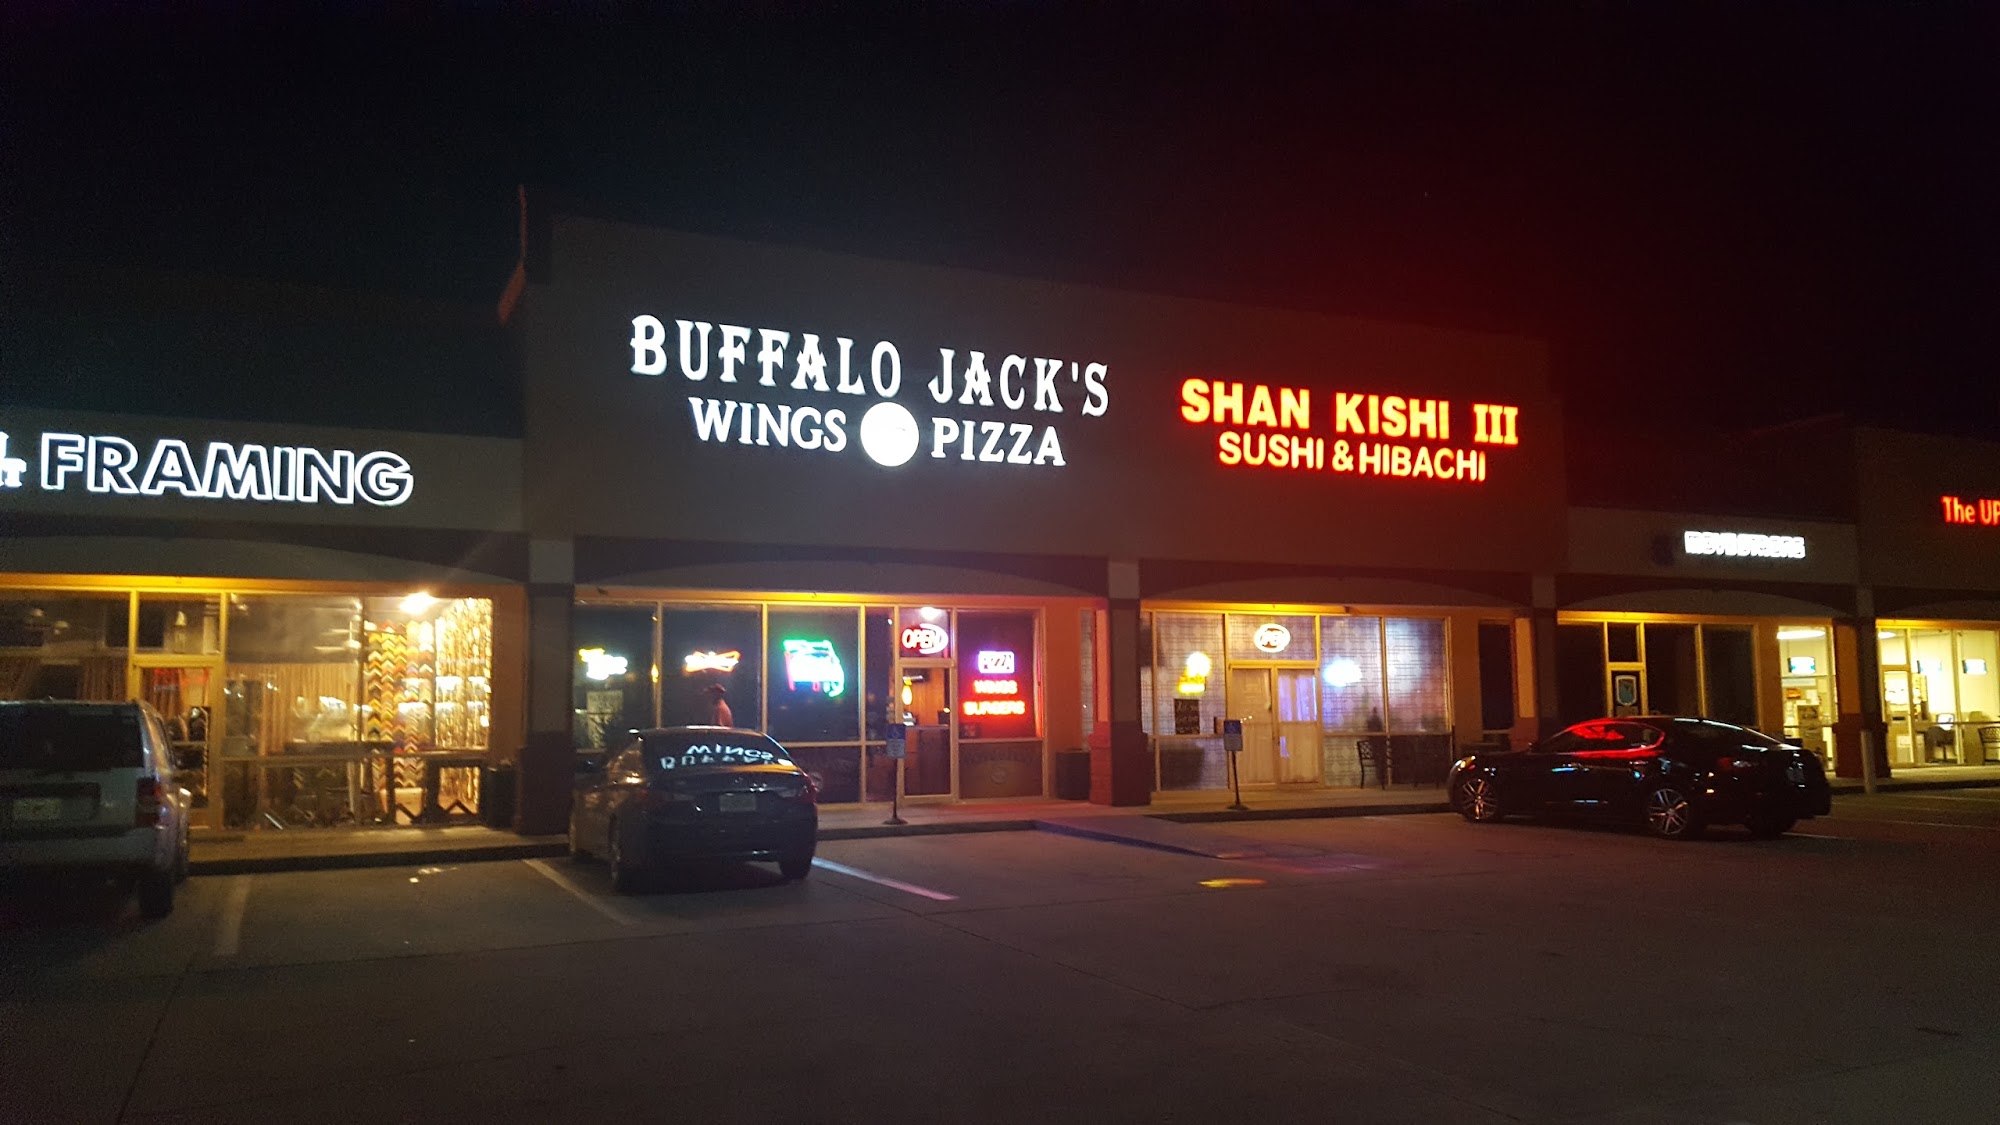 Buffalo Jack's Legendary Wings & Pizza